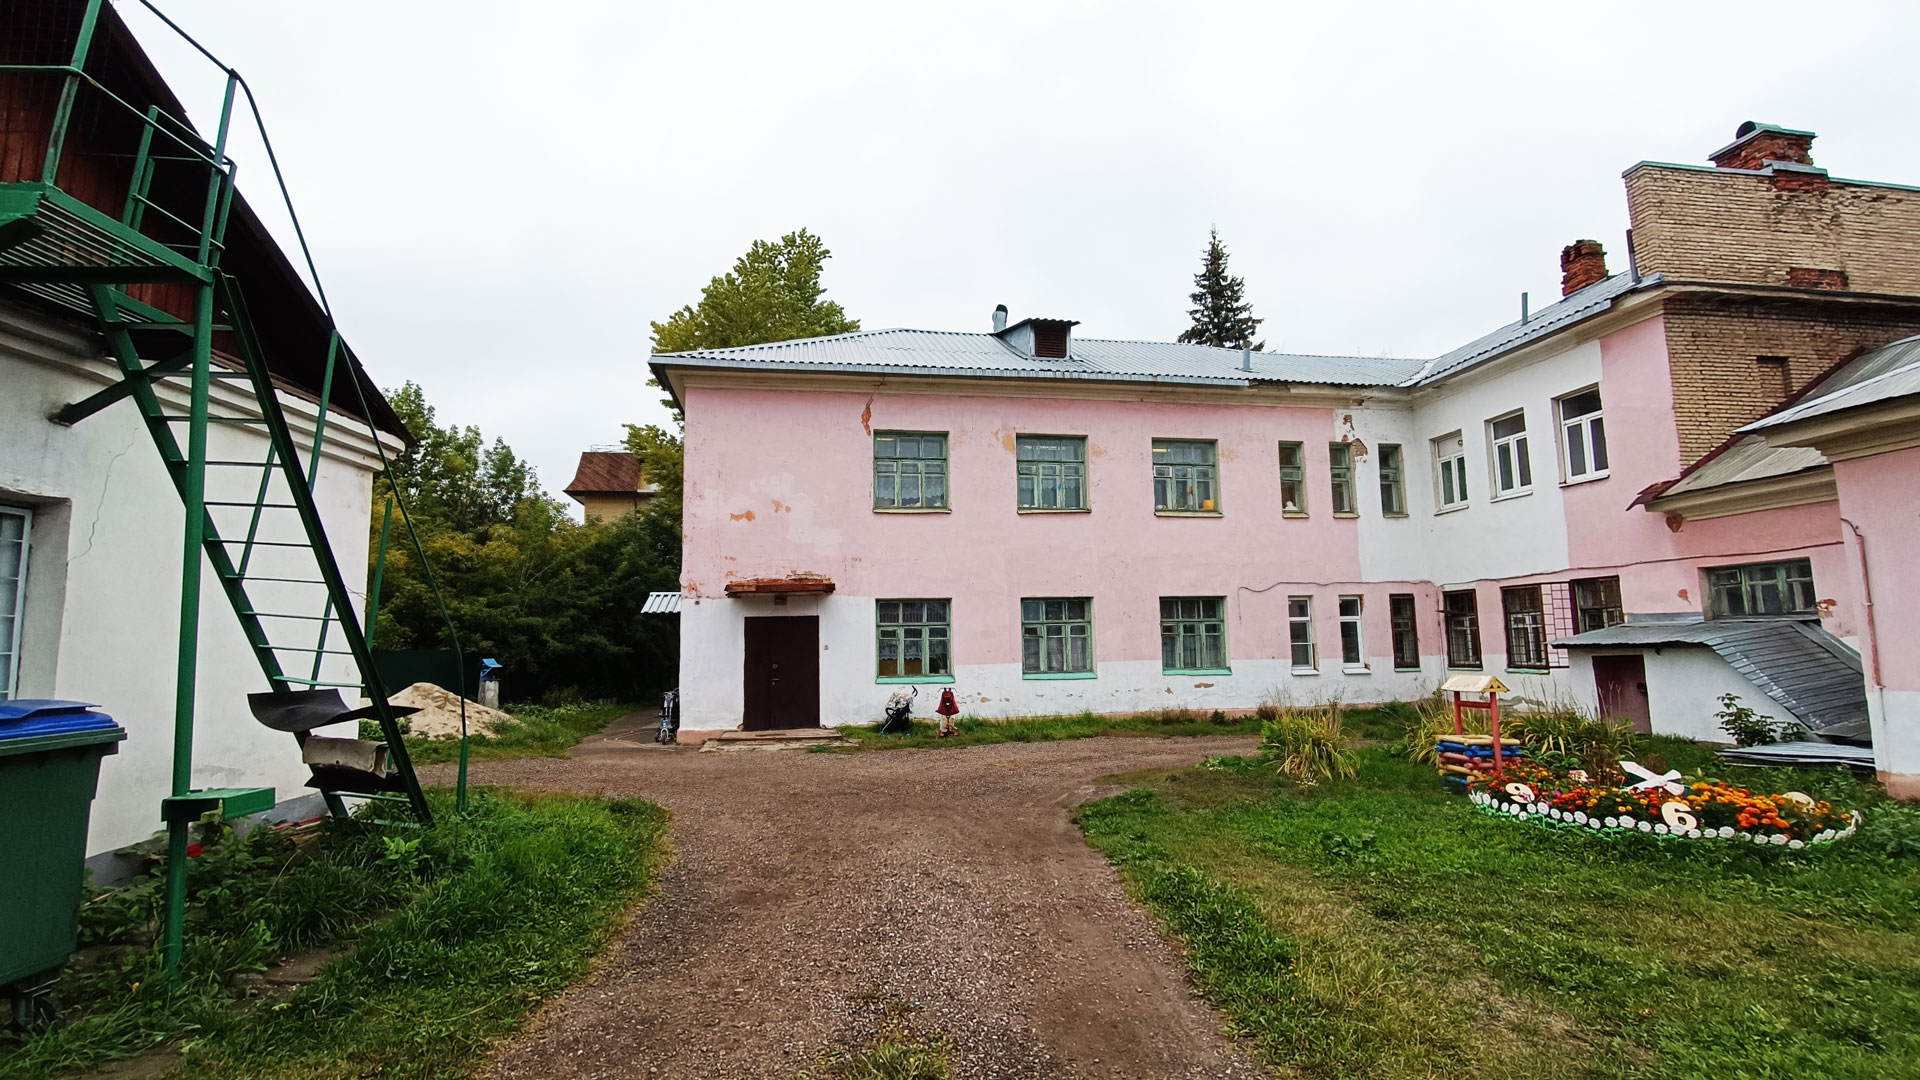 Детский сад 9 Ярославль: общий вид здания.